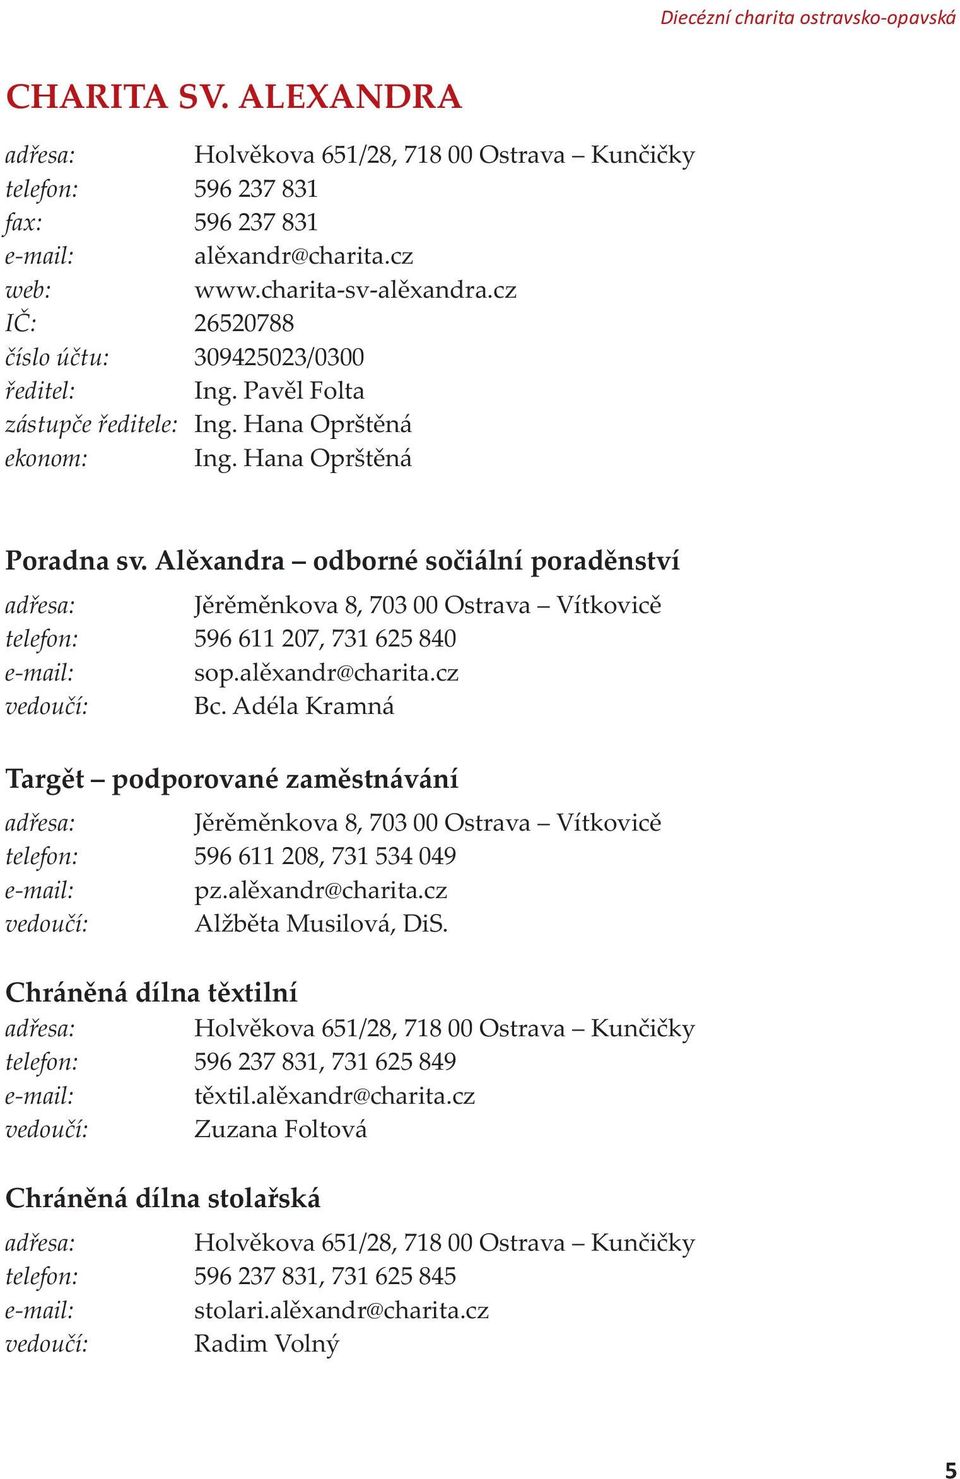 Alexandra odborné sociální poradenství adresa: Jeremenkova 8, 703 00 Ostrava Vítkovice telefon: 596 611 207, 731 625 840 e-mail: sop.alexandr@charita.cz vedoucí: Bc.